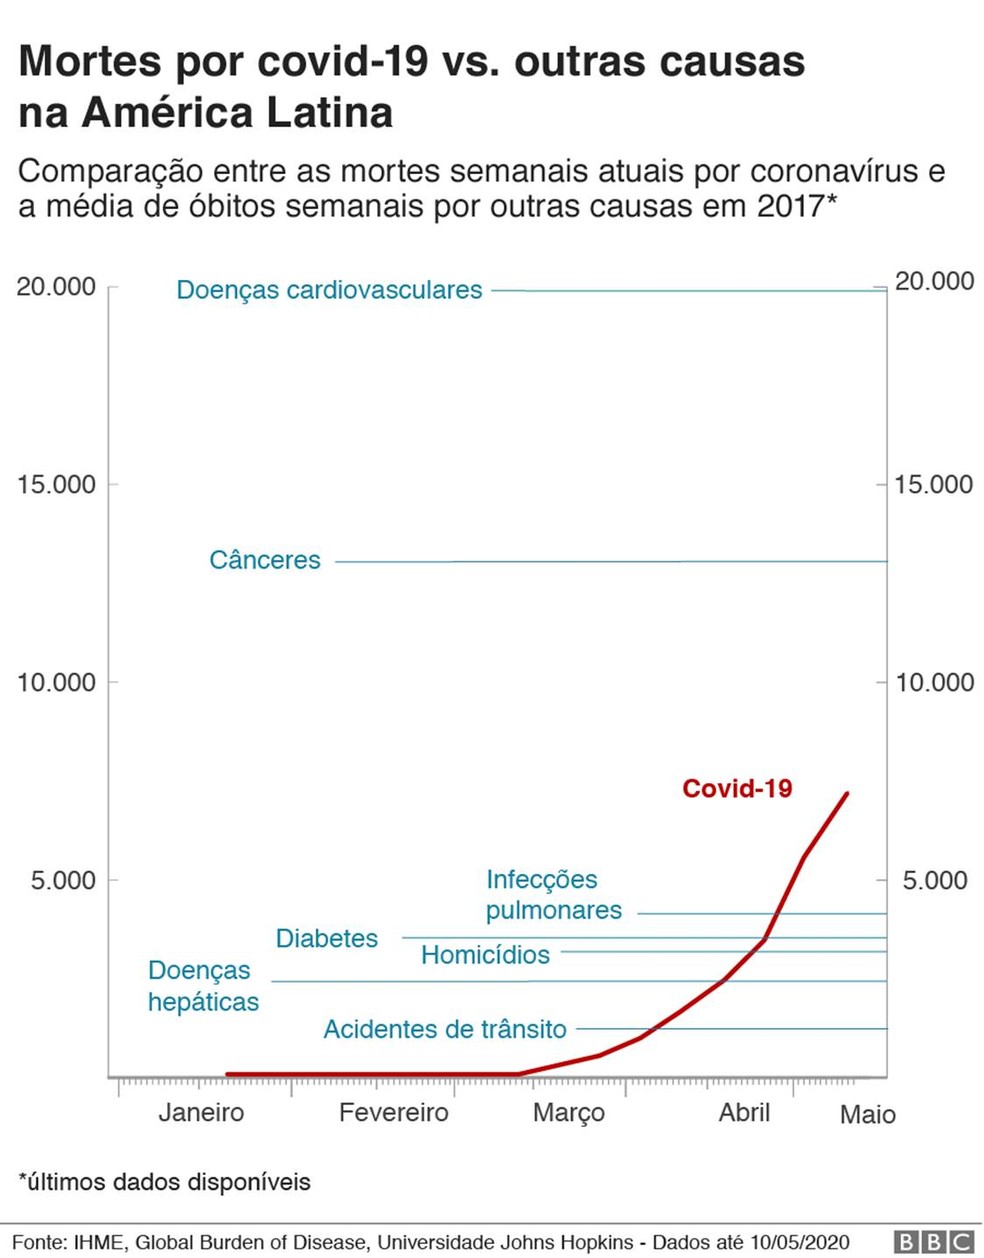 Gráfico compara as mortes semanais por Covid-19 na América Latina em comparação com outras causas — Foto: BBC